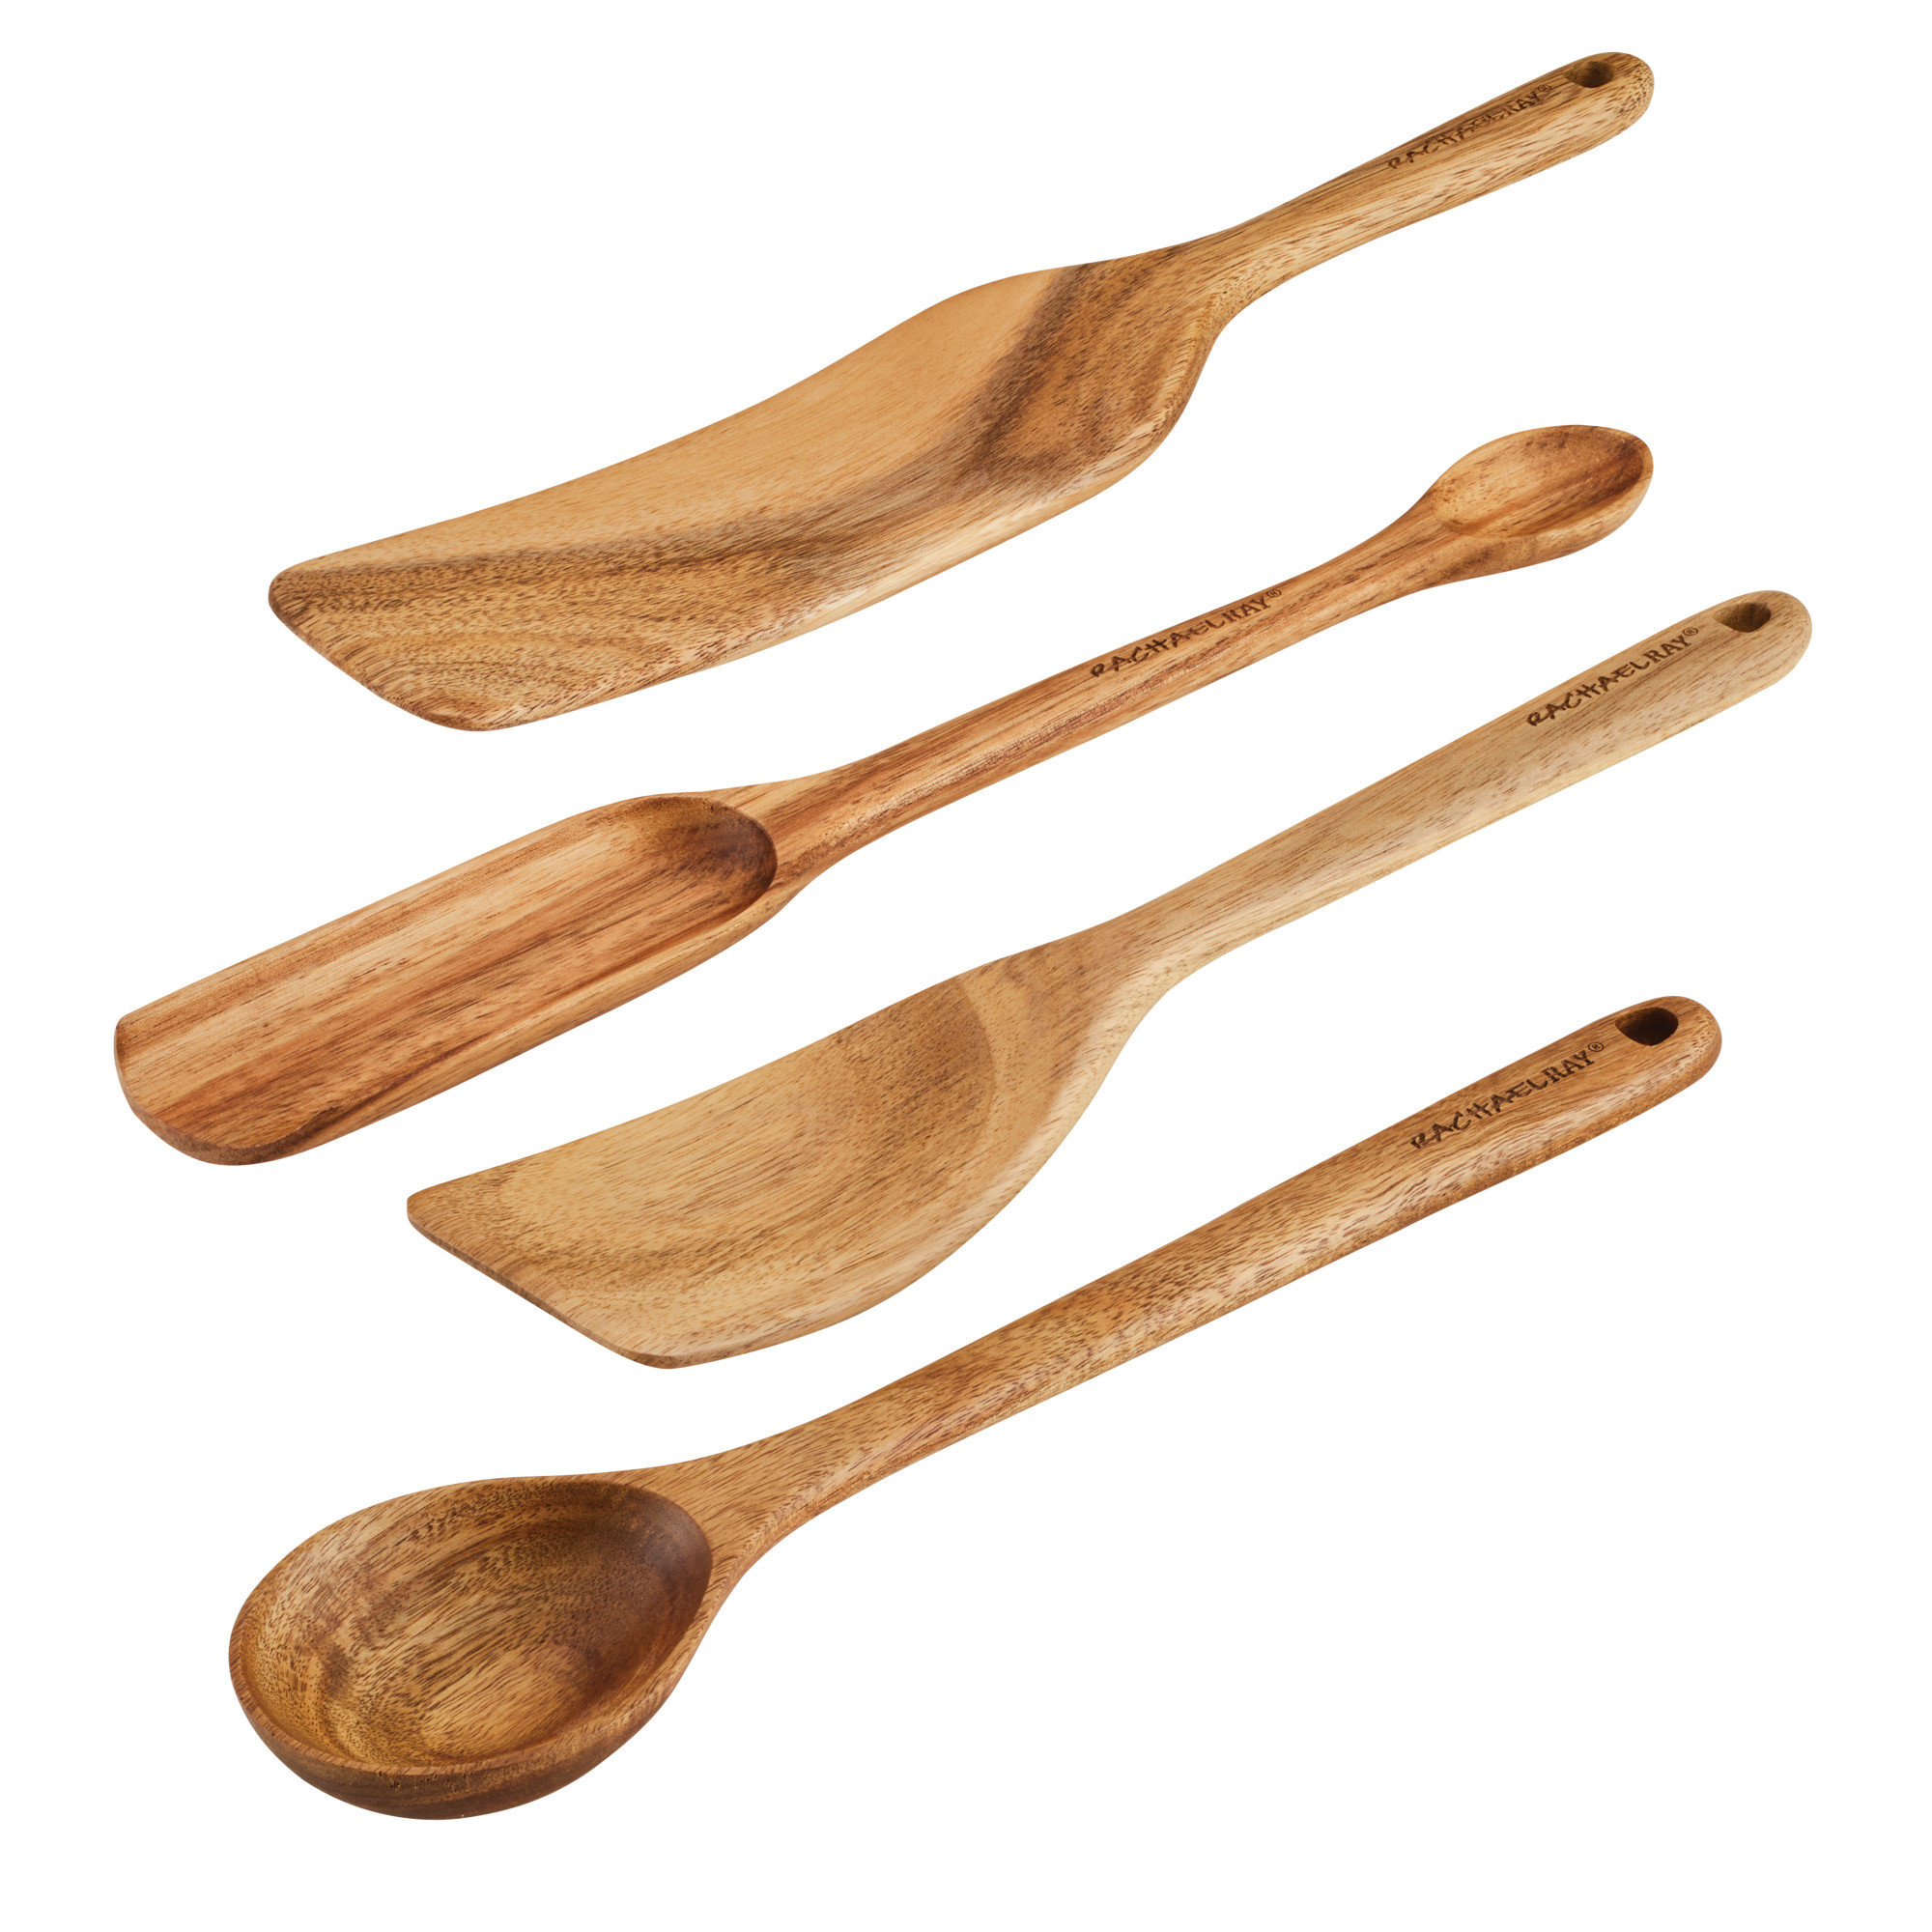 https://assets.wfcdn.com/im/57707465/compr-r85/2323/232342777/rachael-ray-tools-gadgets-wooden-kitchen-cooking-utensil-set-4-piece.jpg